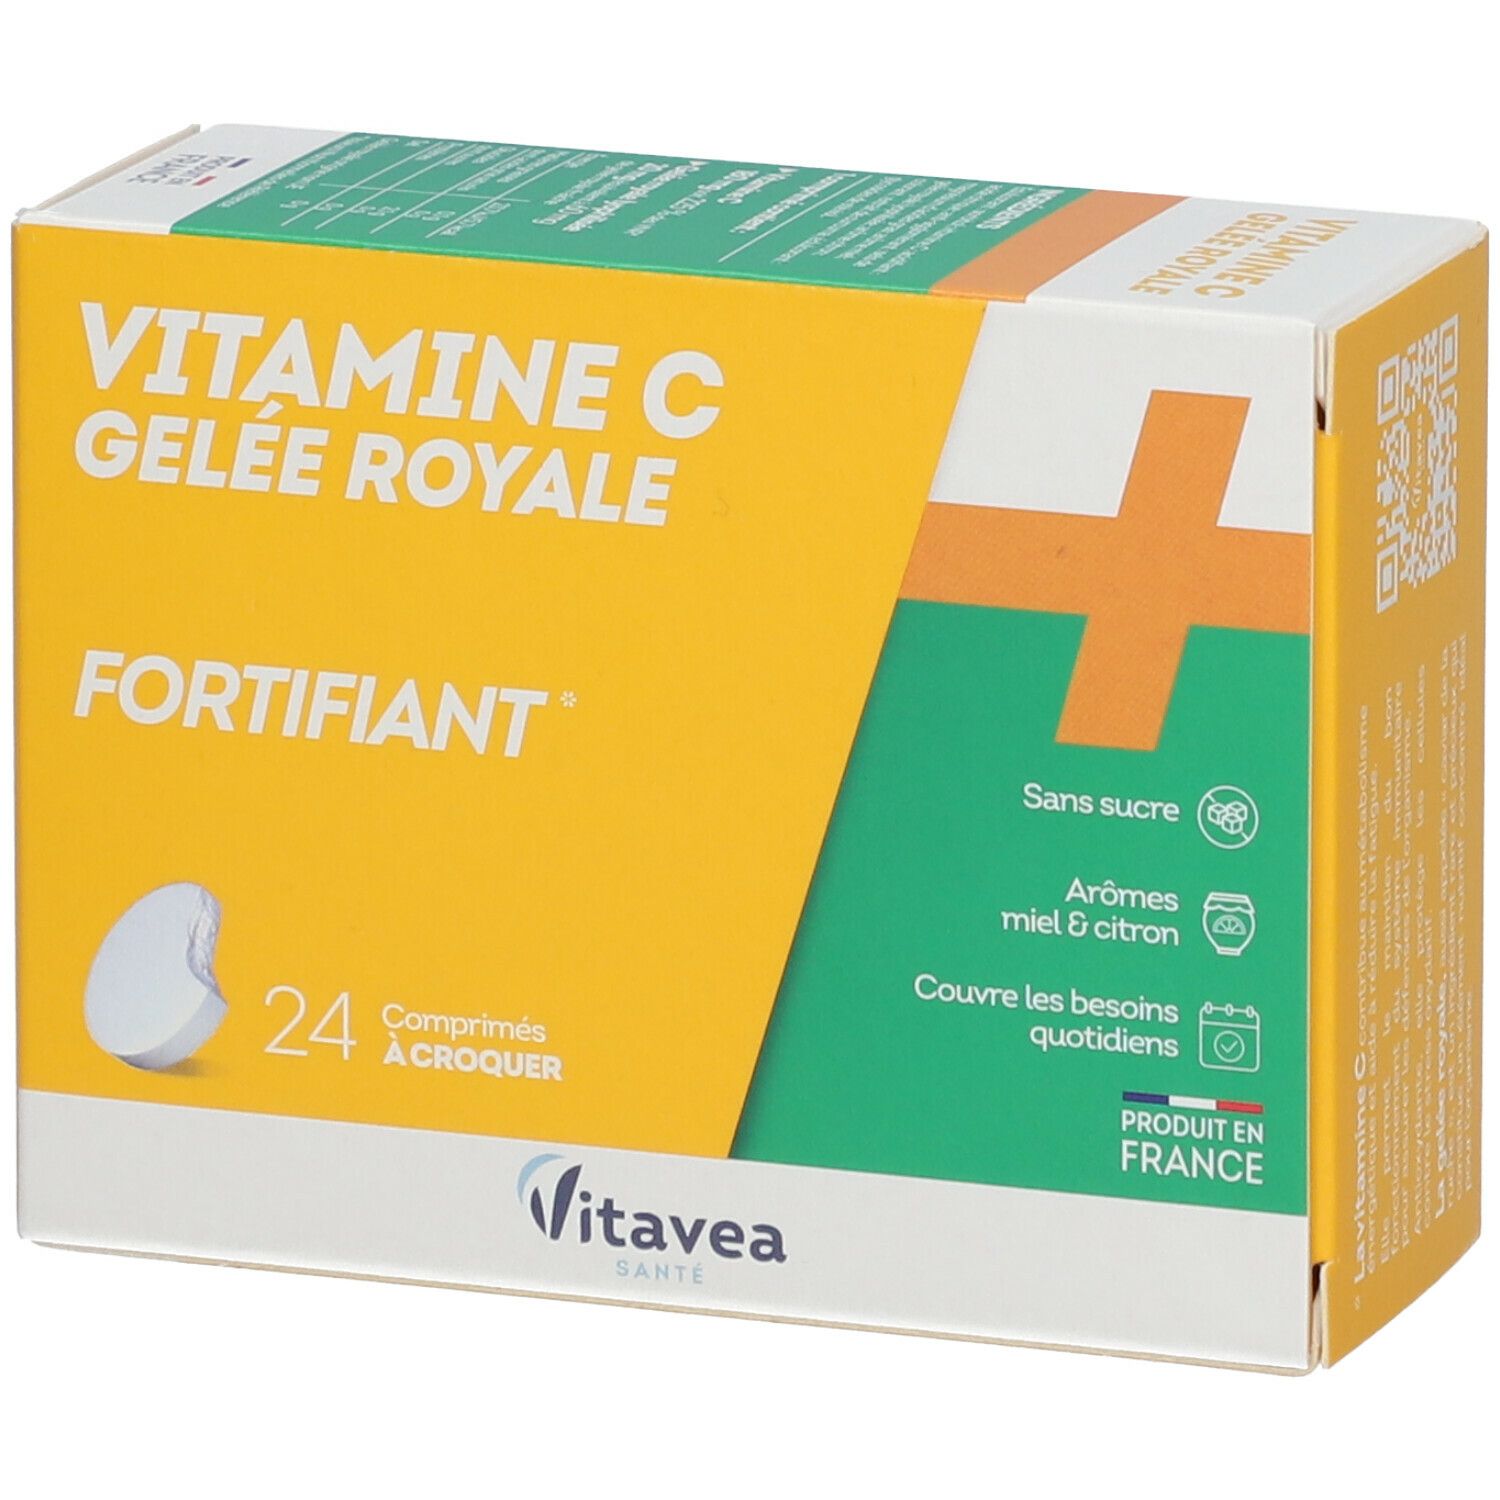 Nutrisanté Fortifiant Vitamine C + Gelée royale